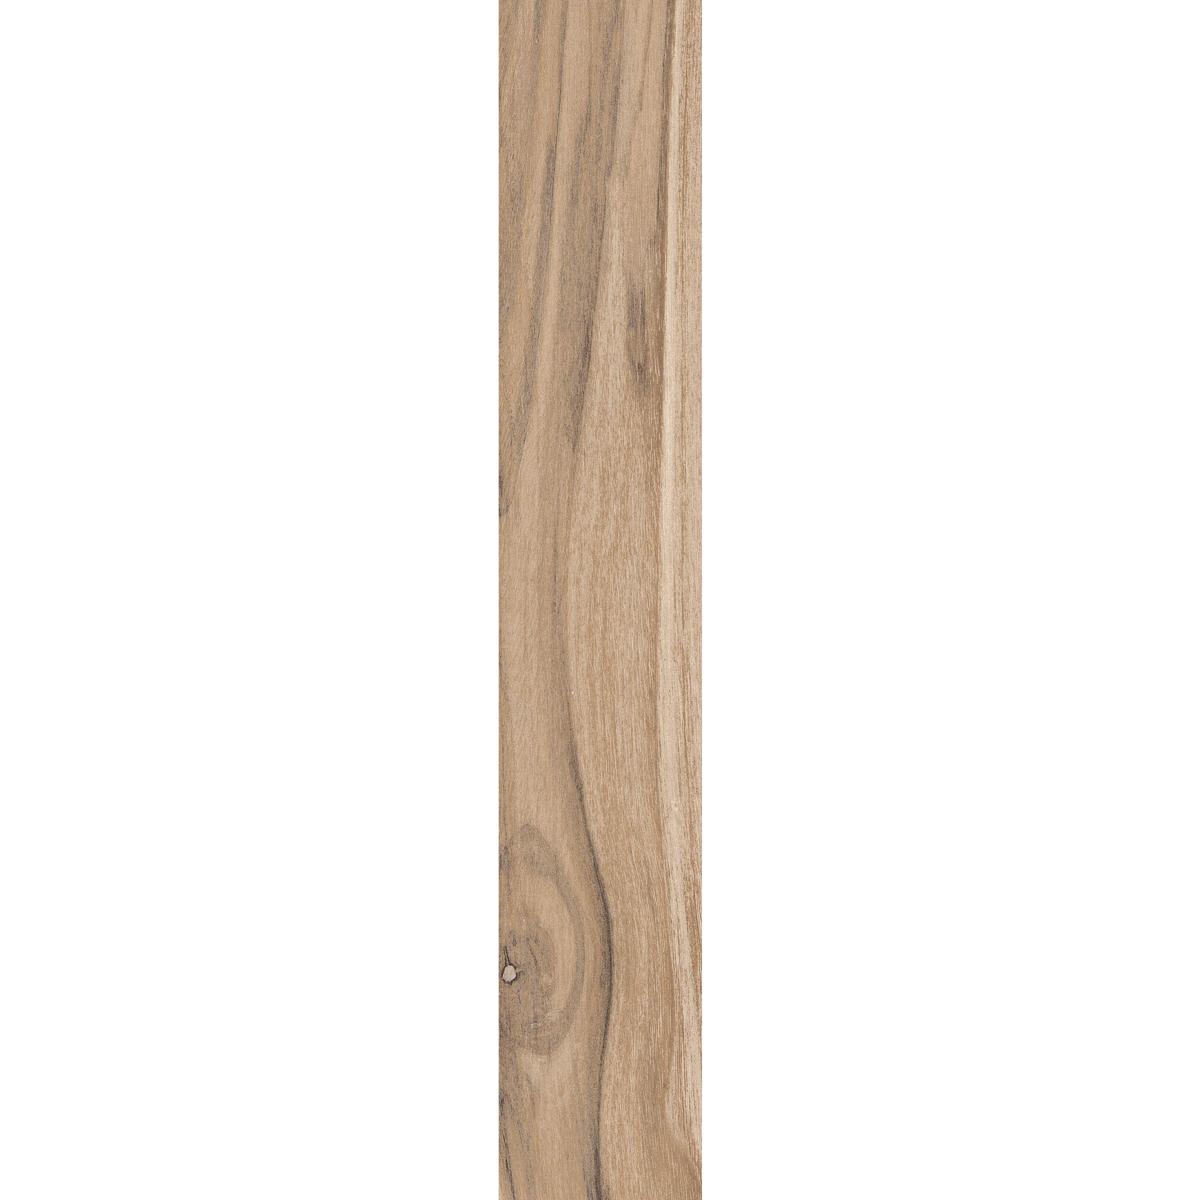 Rondine Living Marrone Wood Effect Porcelain Tile 7.5x45cm